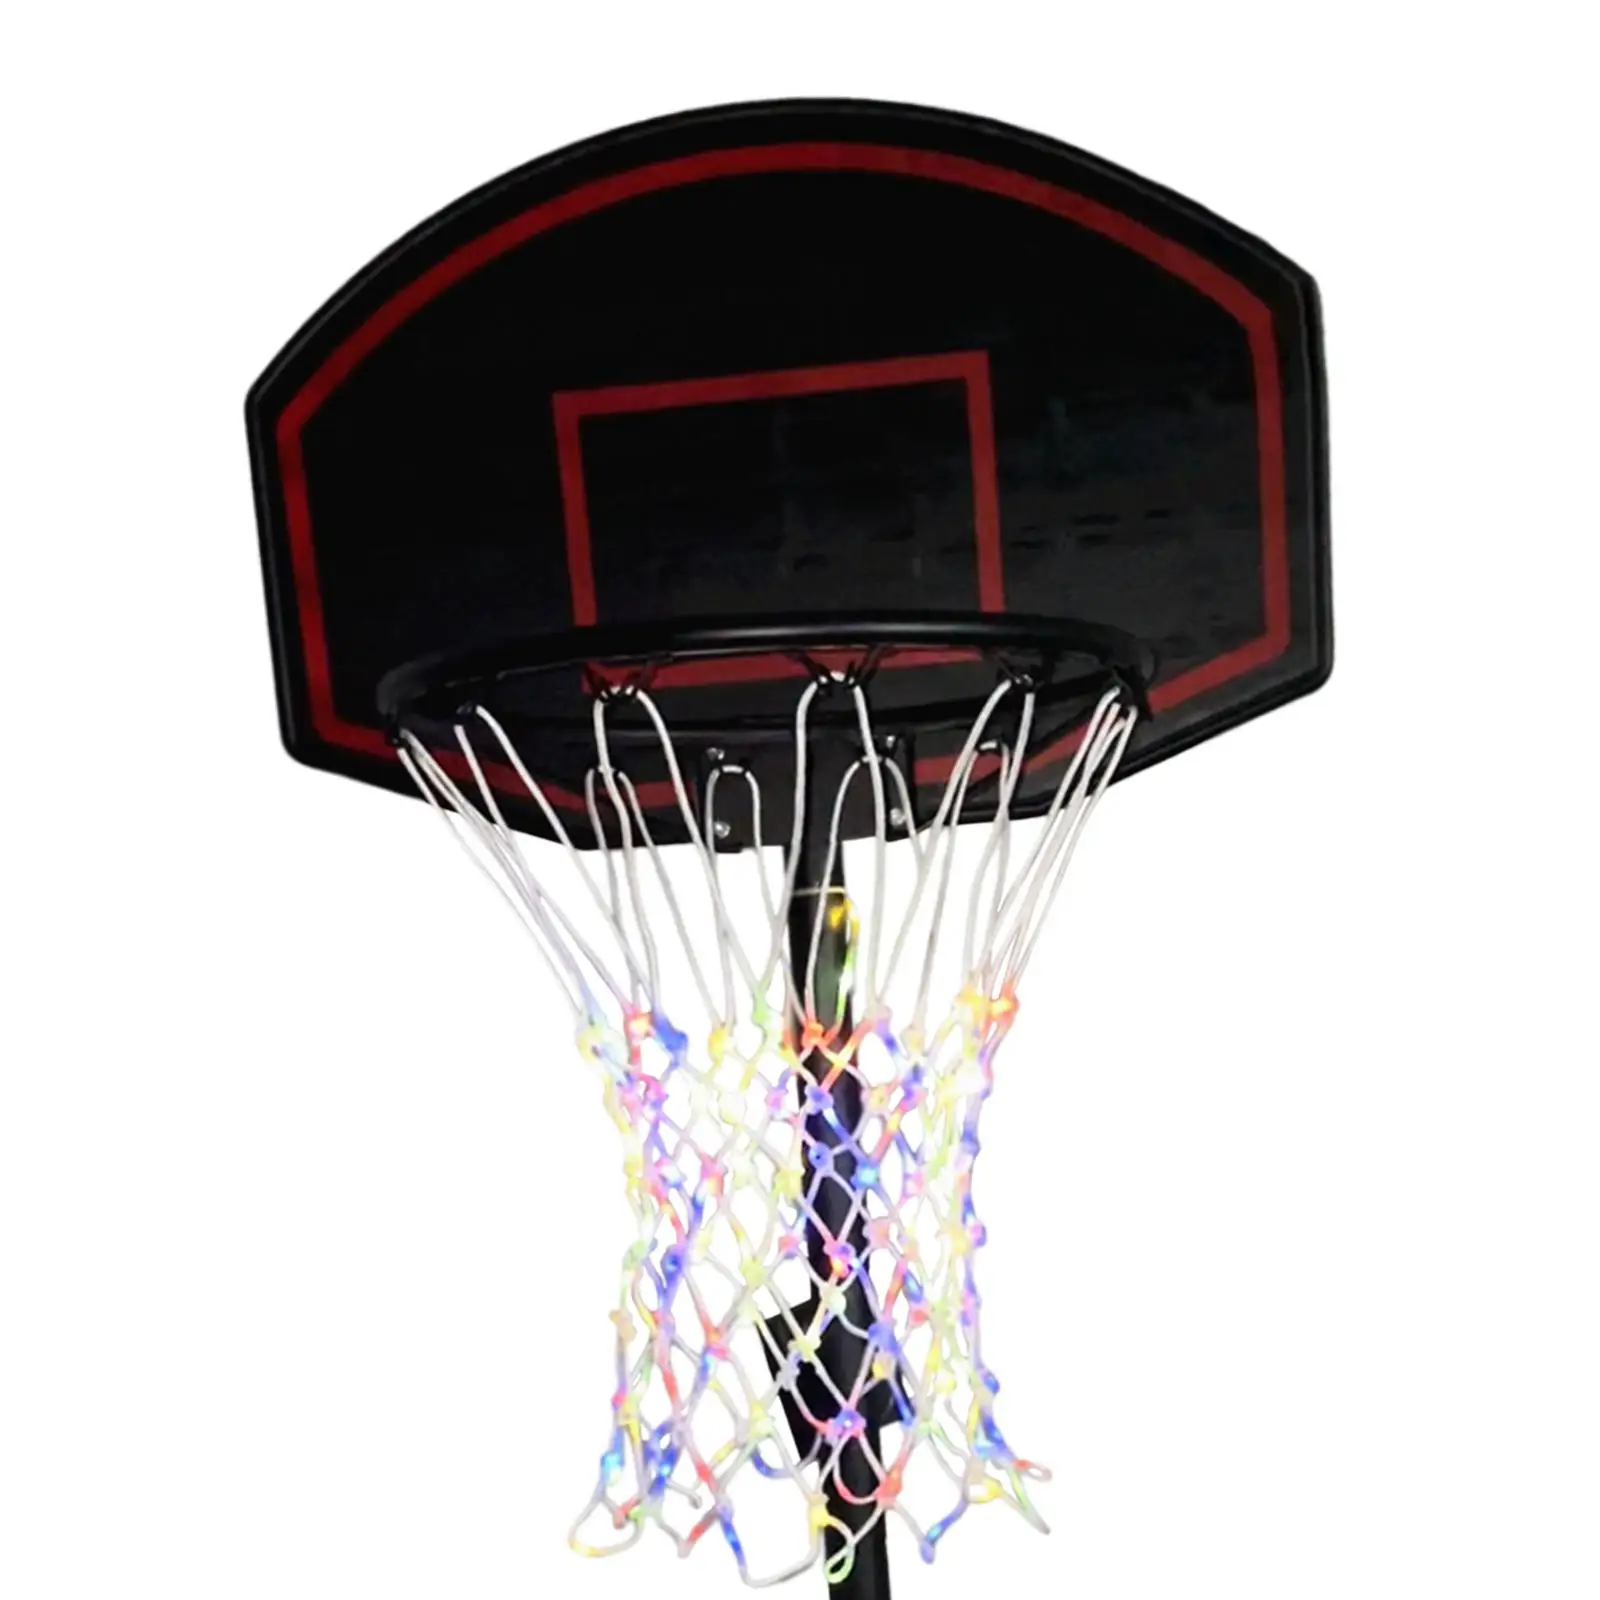 Outdoor Luminous Nightlight Basketball Net Basketball Rim LED Light for Backyard Outside Outdoor game Basketball Training